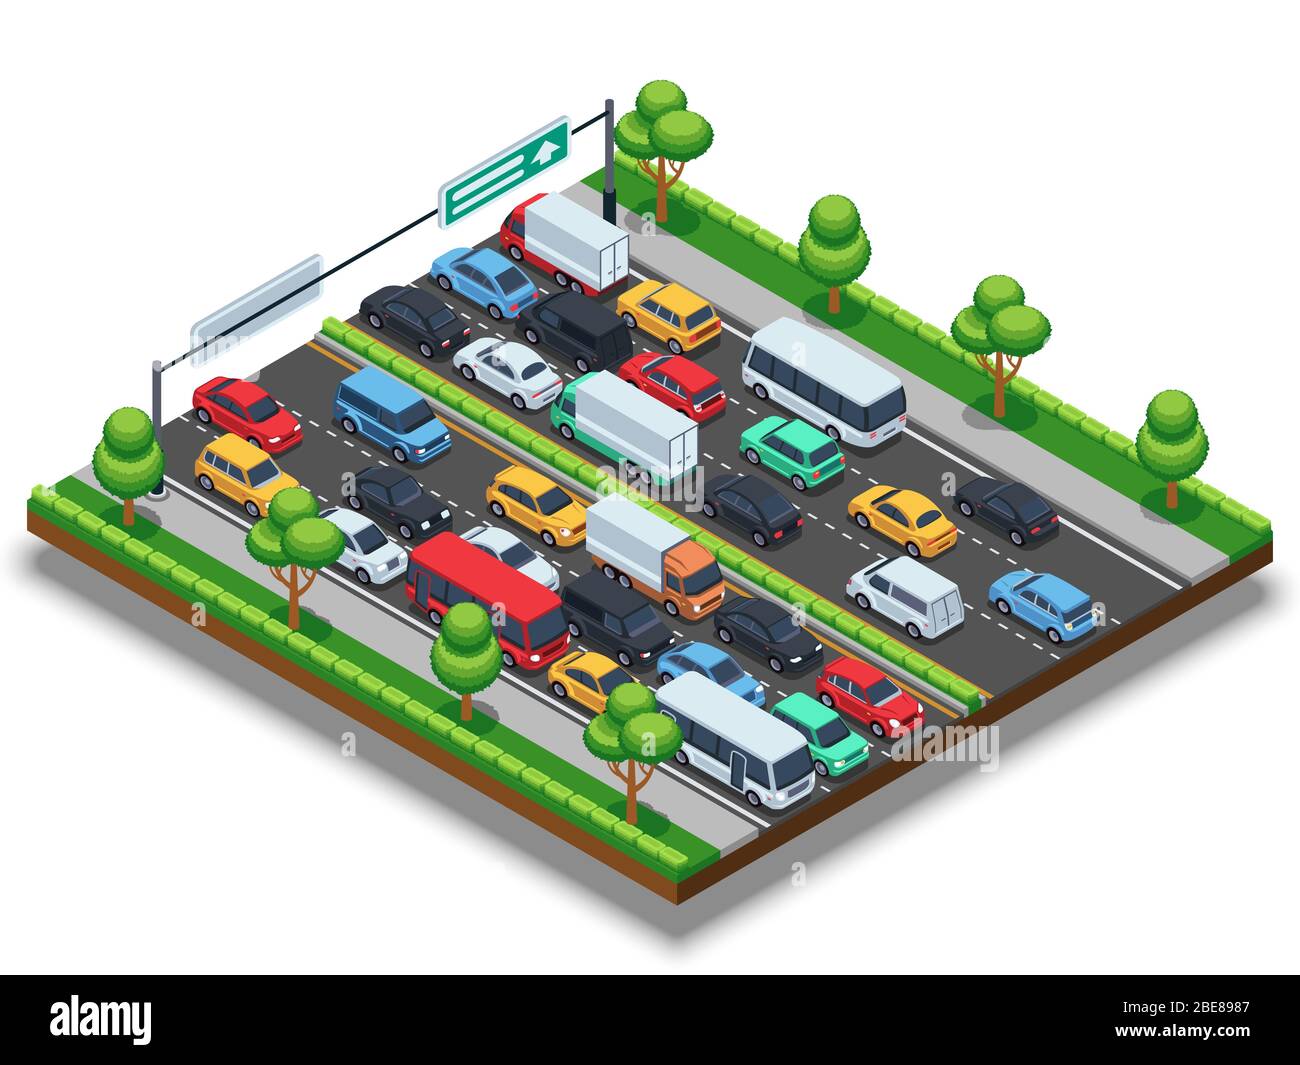 Autoroute isométrique avec embouteillage. concept vectoriel de transport tridimensionnel avec voitures et camions. Voiture sur la route dans l'illustration des embouteillages Illustration de Vecteur